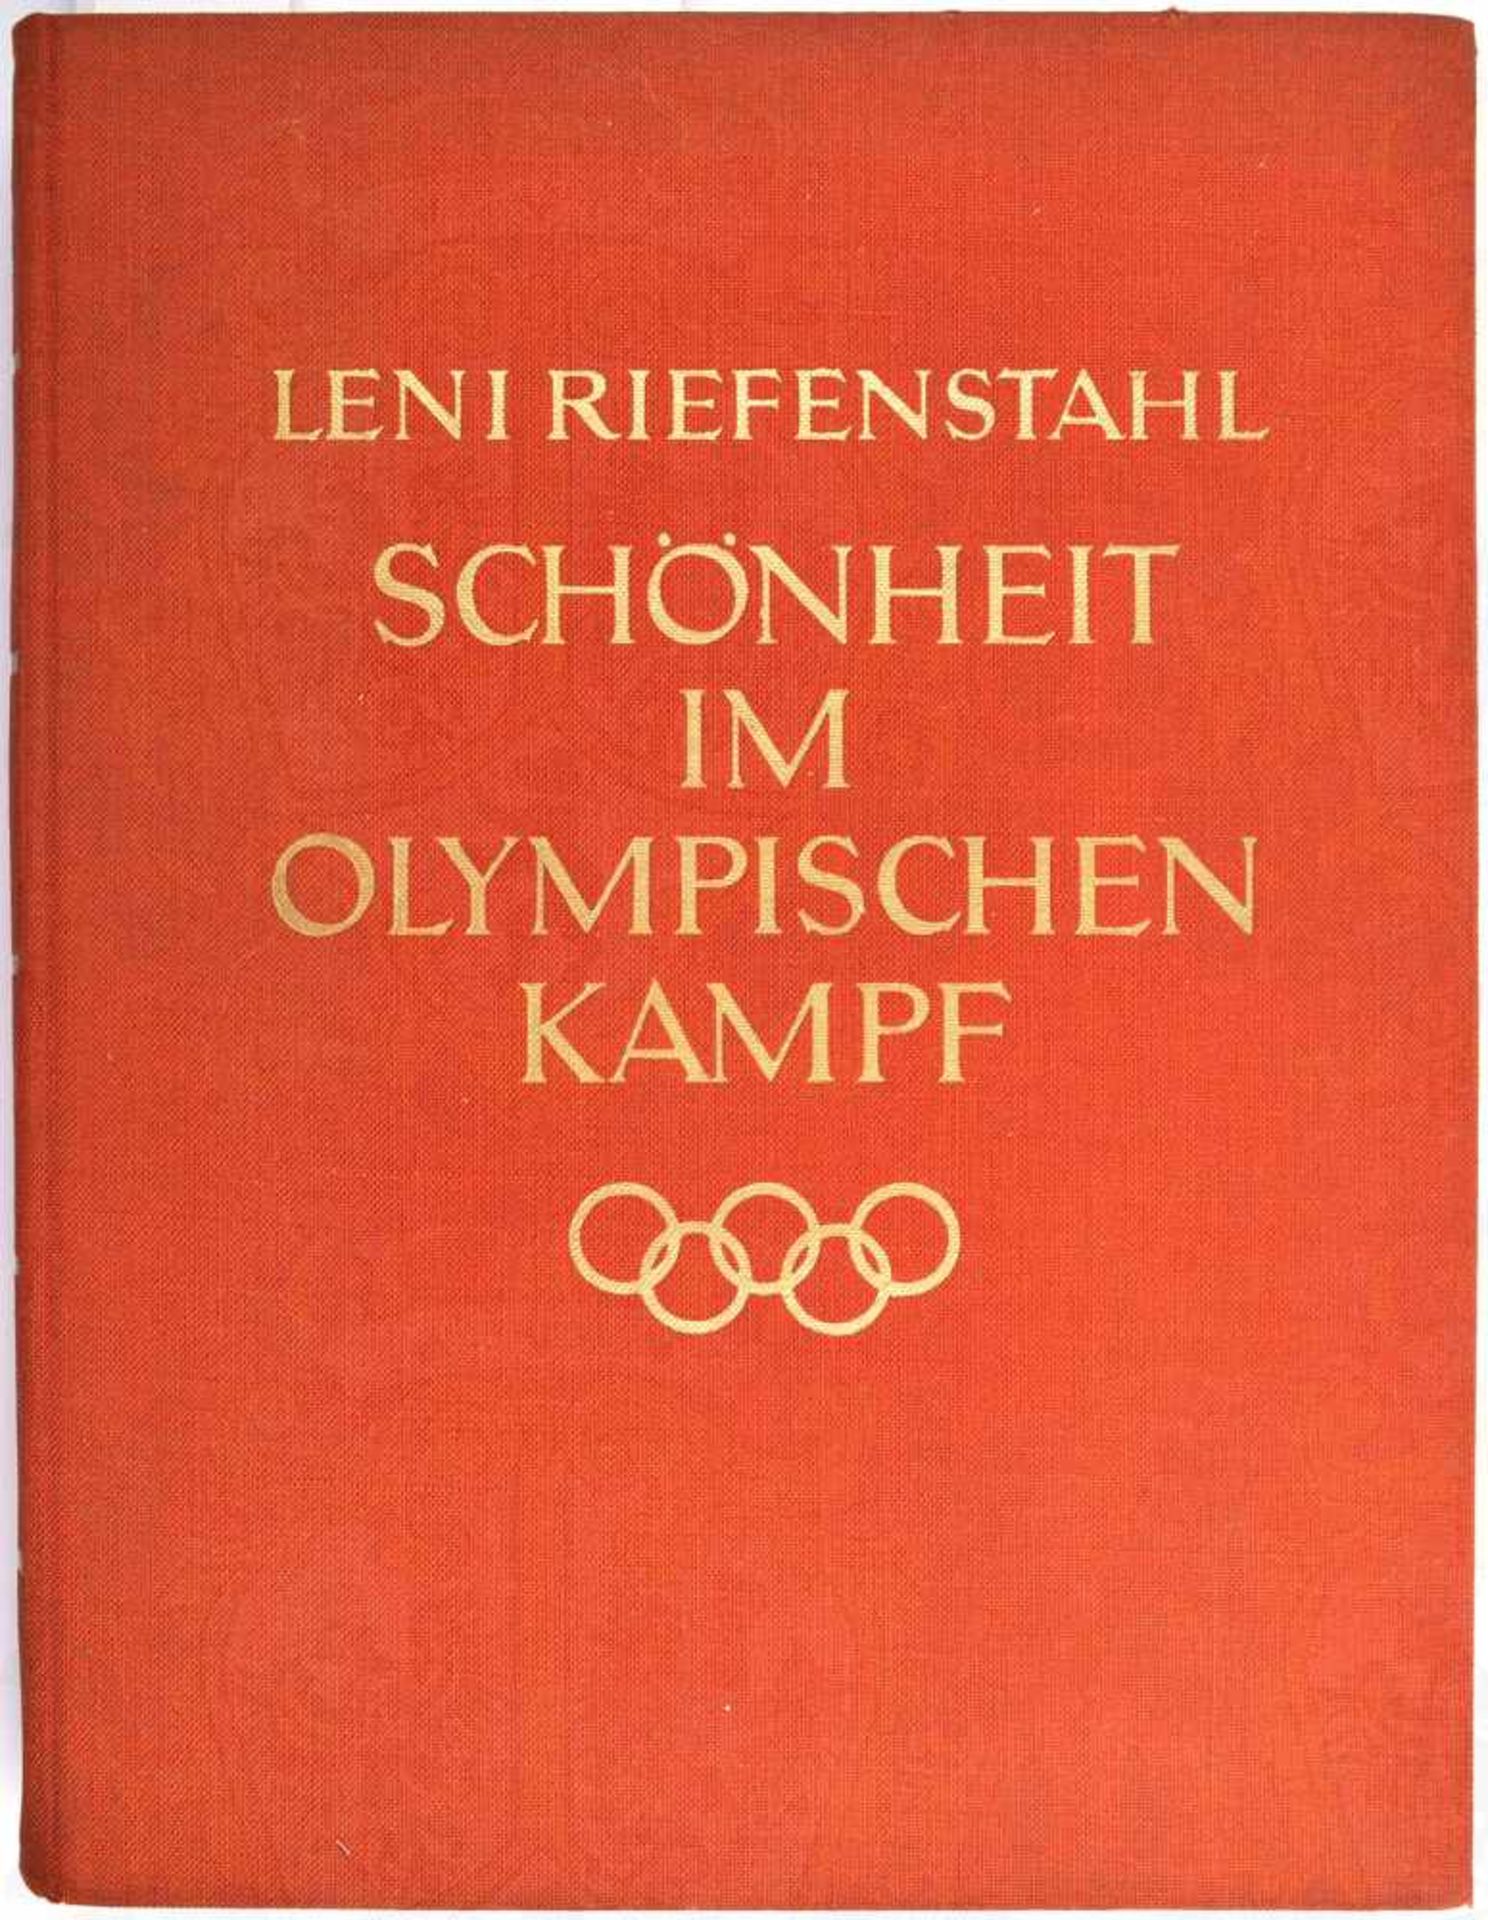 SCHÖNHEIT IM OLYMPISCHEN KAMPF, Leni Riefenstahl, Berlin 1937, 280 S., (S. 117 u.118 fehlen),